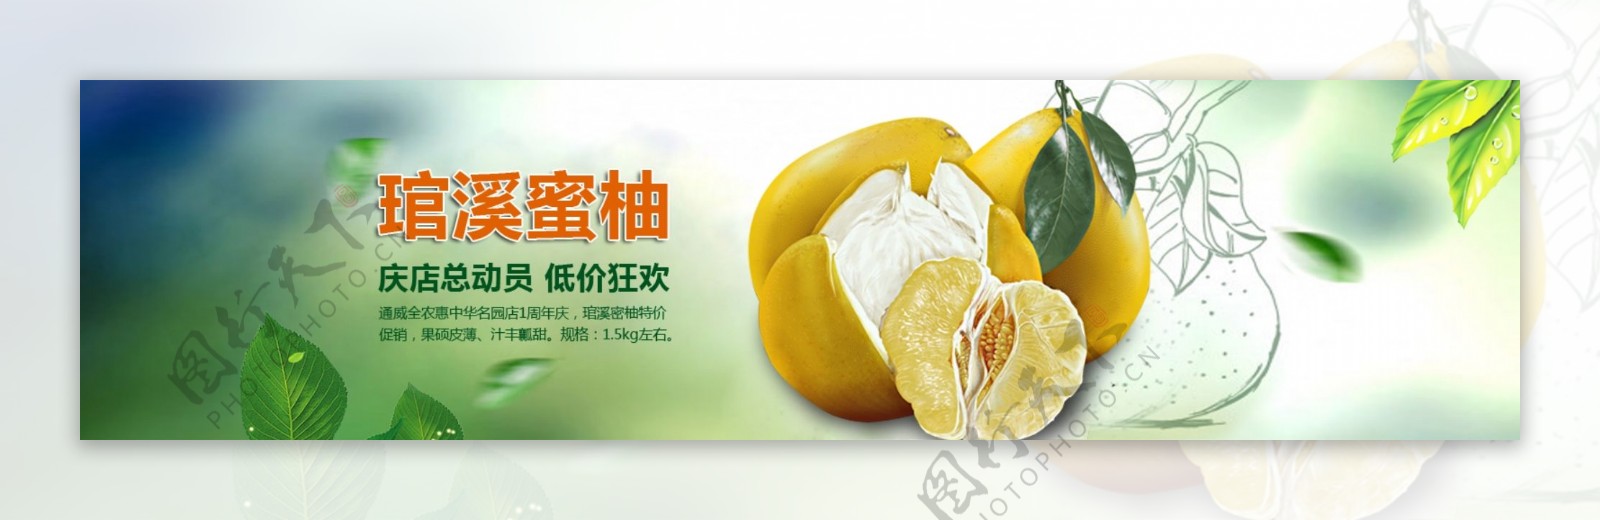 柚子广告图图片